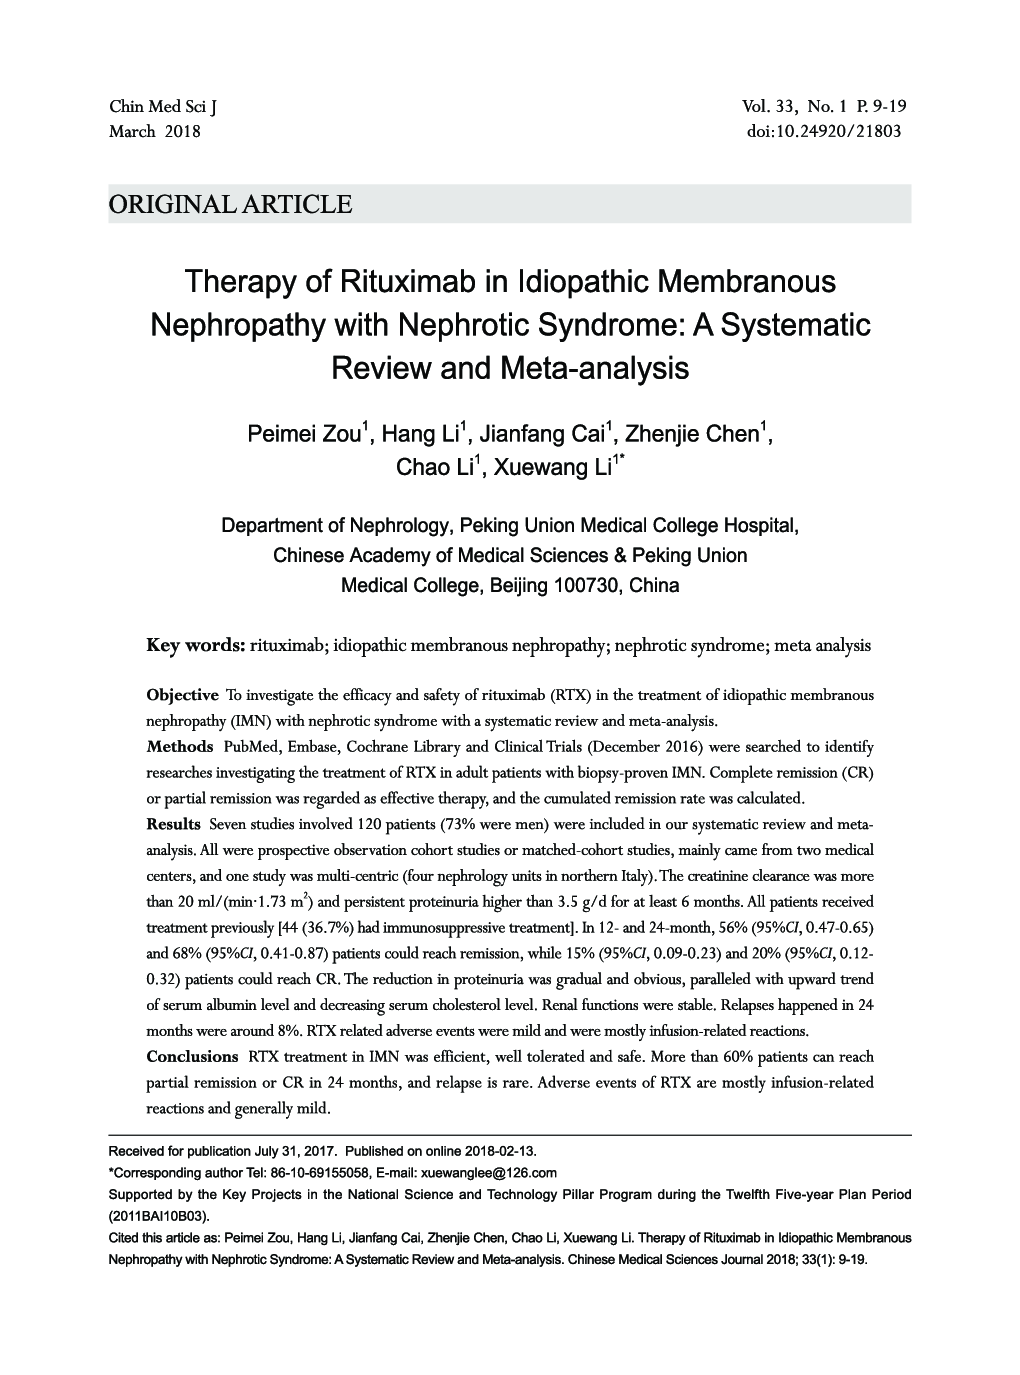 درمان ریتوکسیماب در نفروپاتی غشایی ایدیوپاتیک با سندرم نفروتیک: بررسی منظم و متاآنالیز 